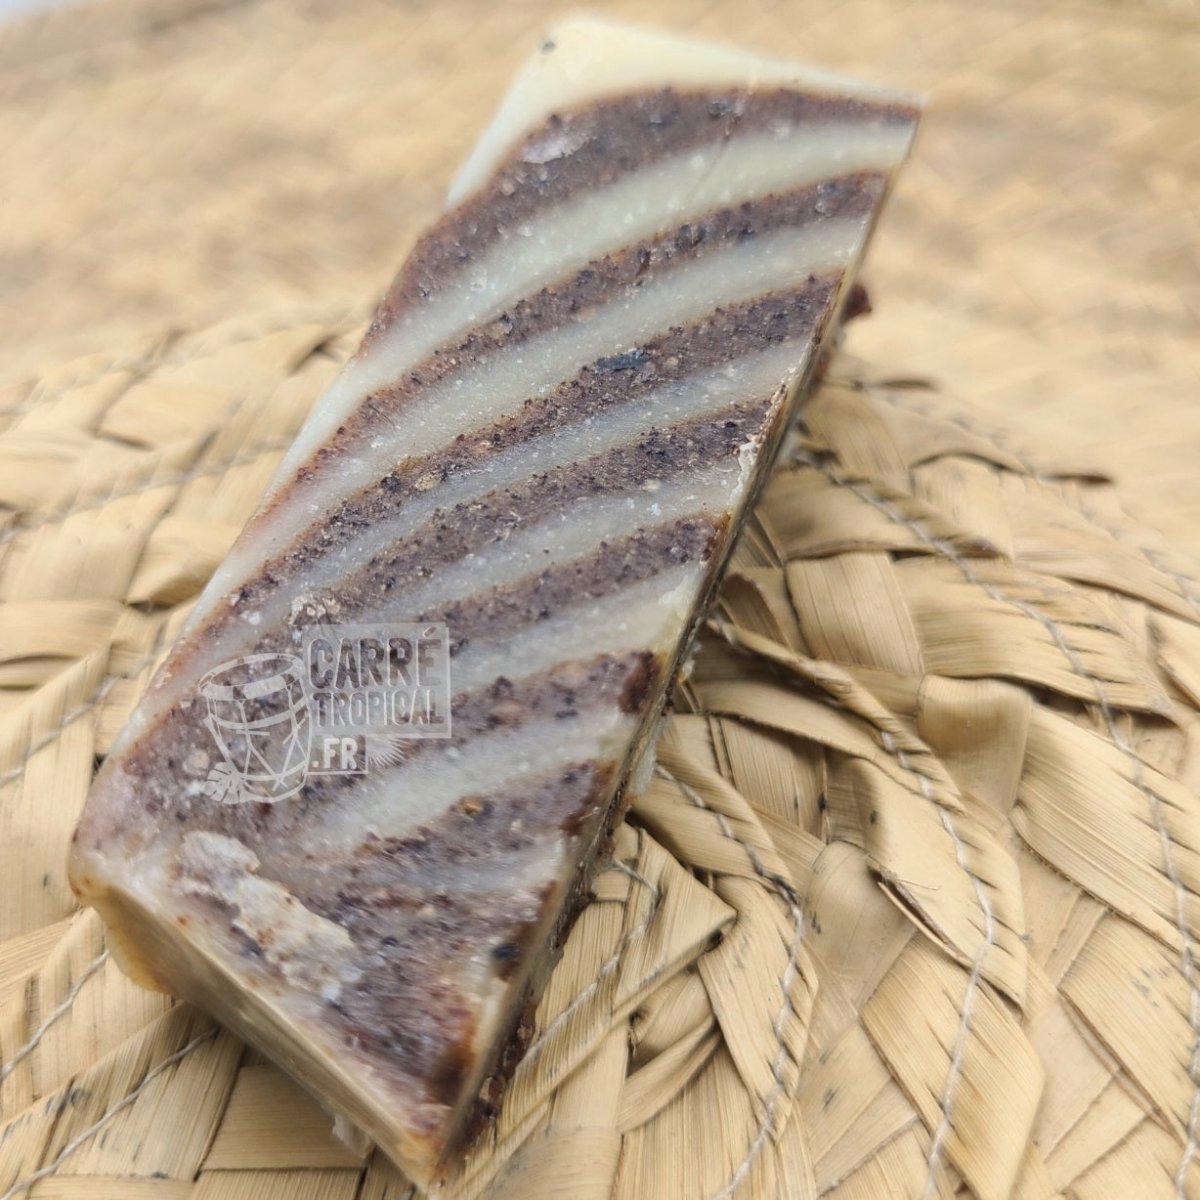 Savon lait d'amande et cacao 🍫 surgras naturel artisanal solide | Par Stéphanie Ronce - Carré TropicalBatônnet (40g)savon